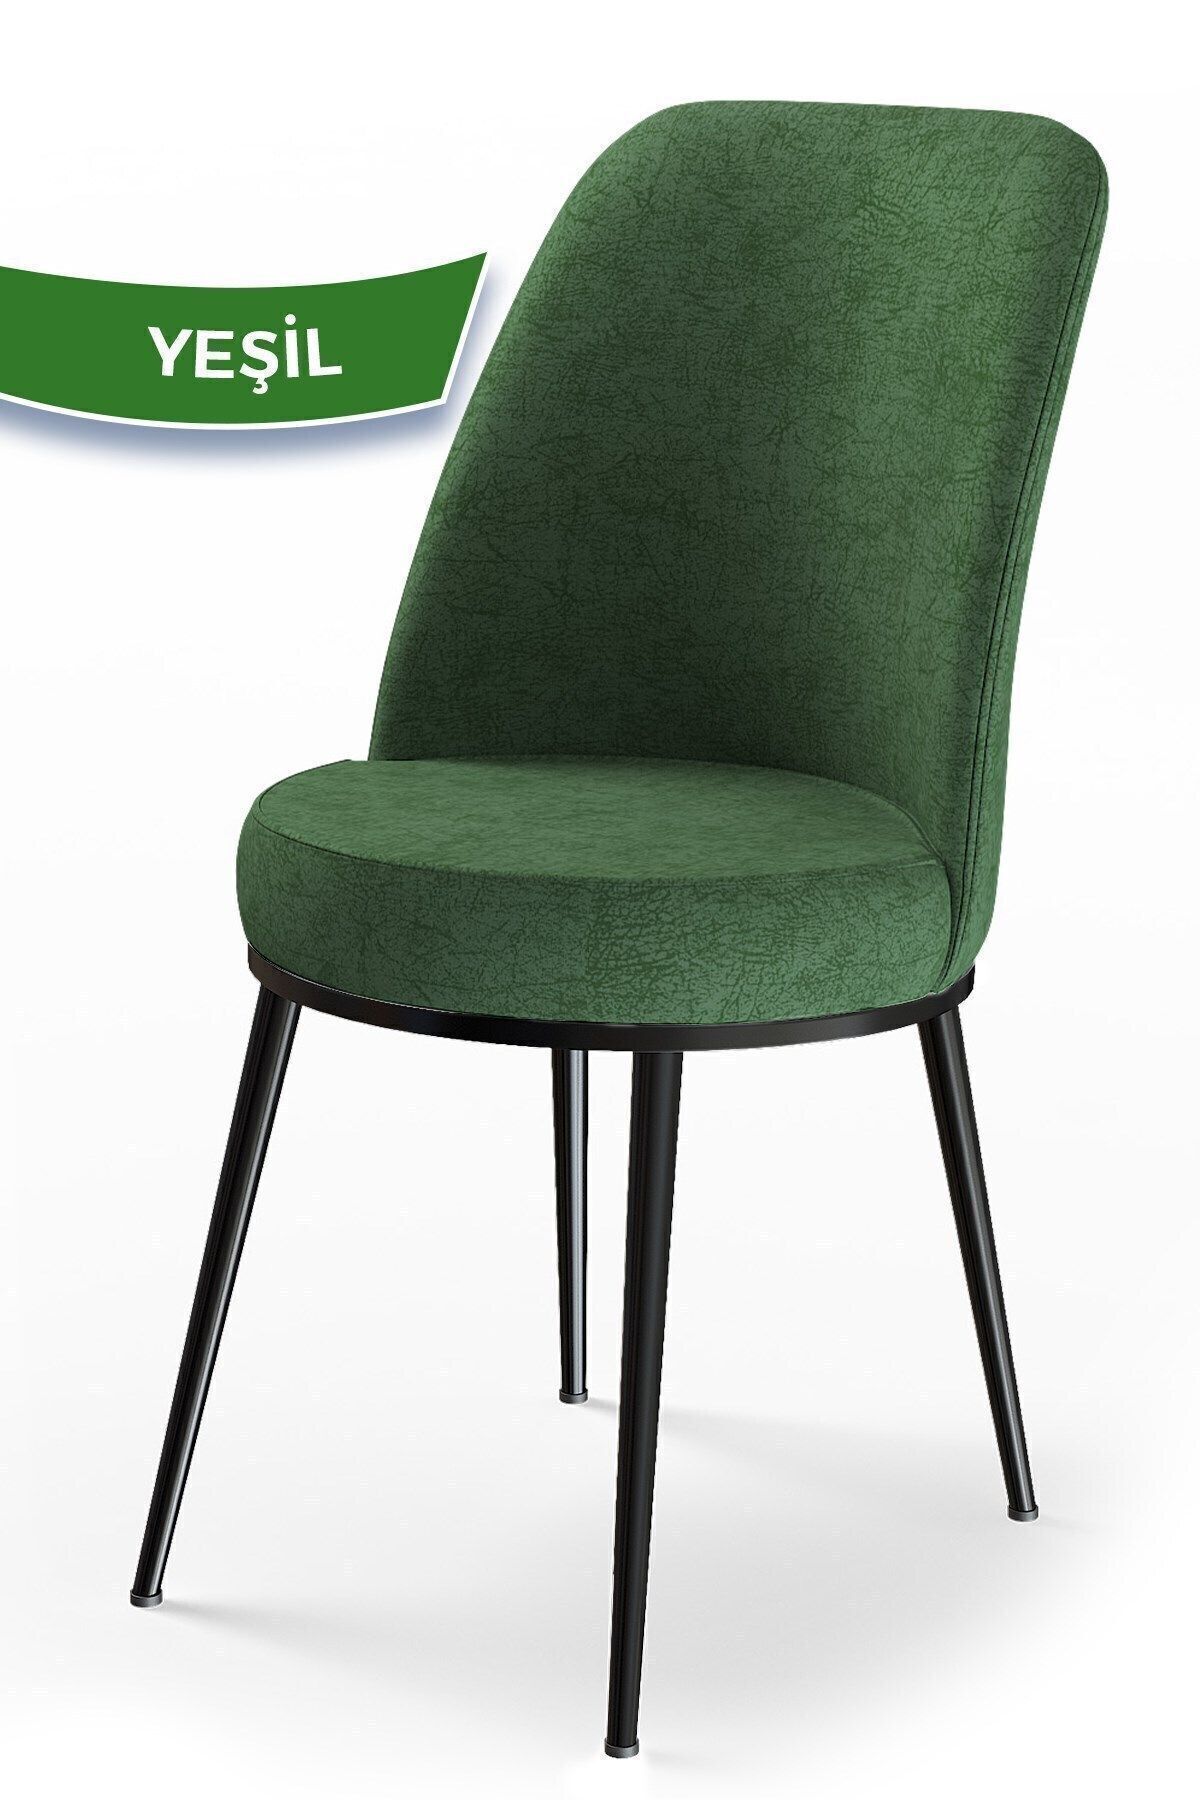 Canisa Concept Dexa Serisi, Üst Kalite Mutfak Sandalyesi, Metal Siyah Iskeletli, 1 Adet Yeşil Sandalye